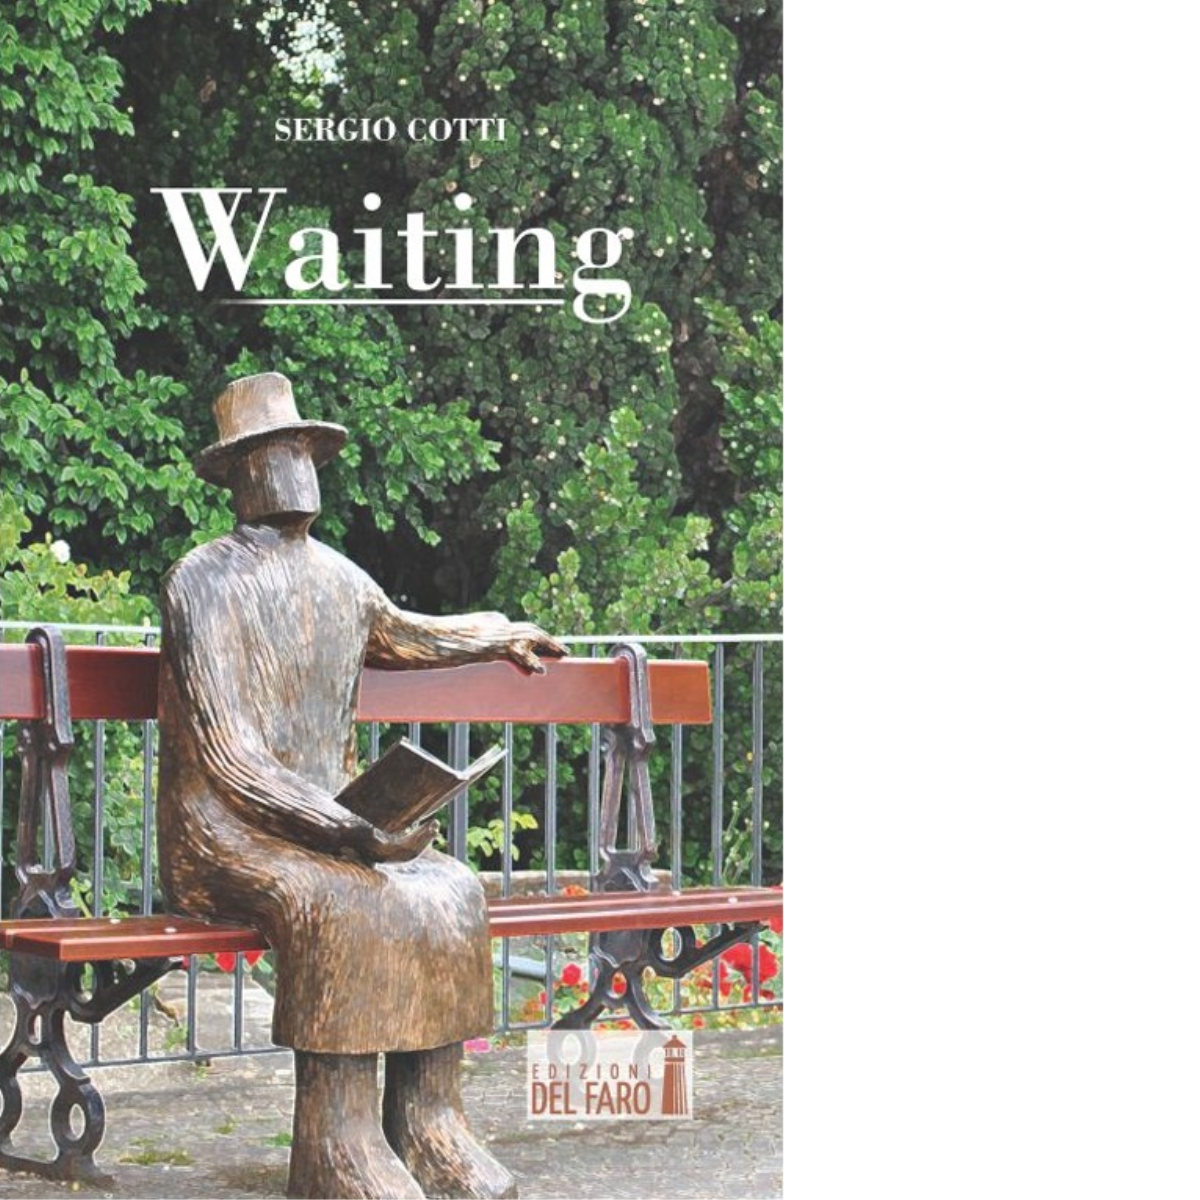 Waiting di Sergio Cotti - Edizioni Del faro, 2014